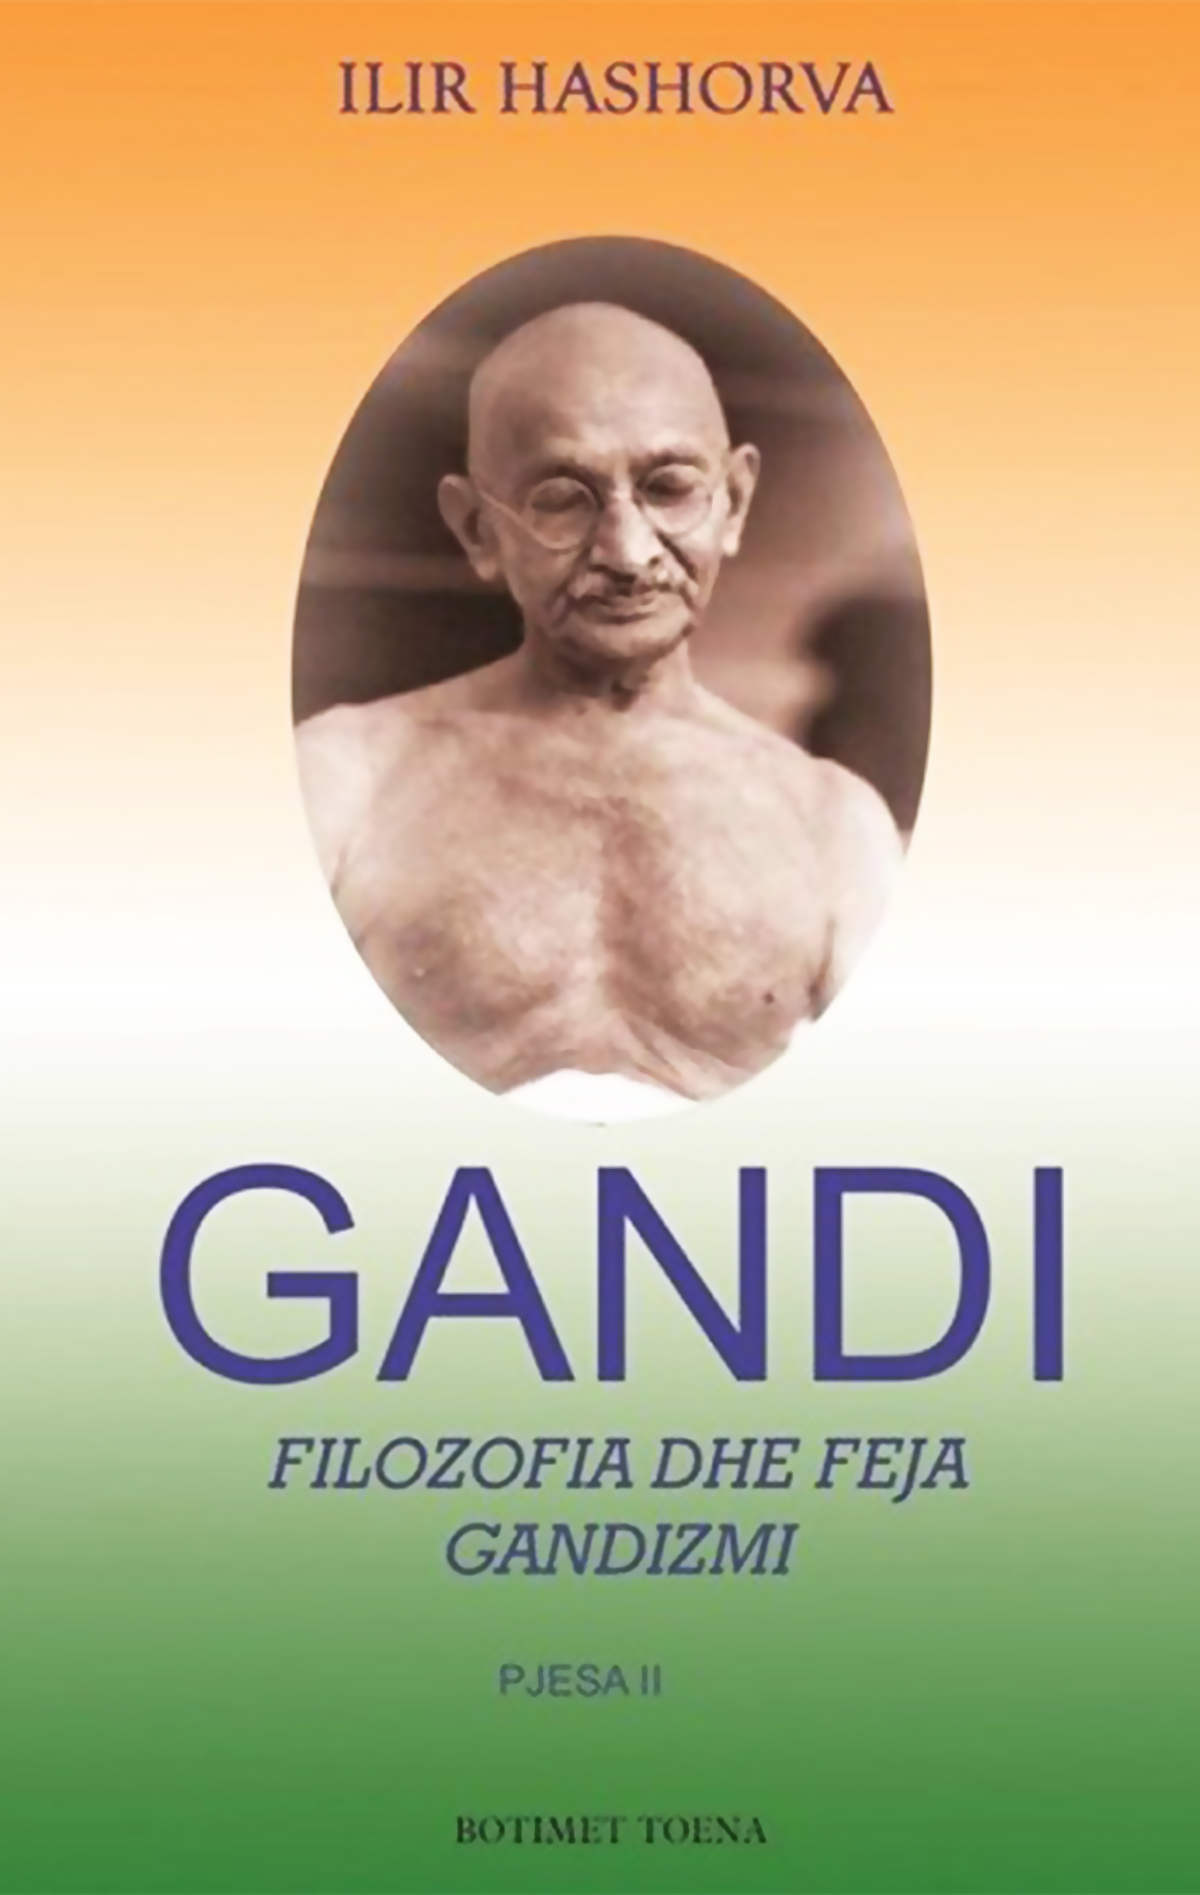 Gandi II - Filozofia dhe feja - Gandizmi